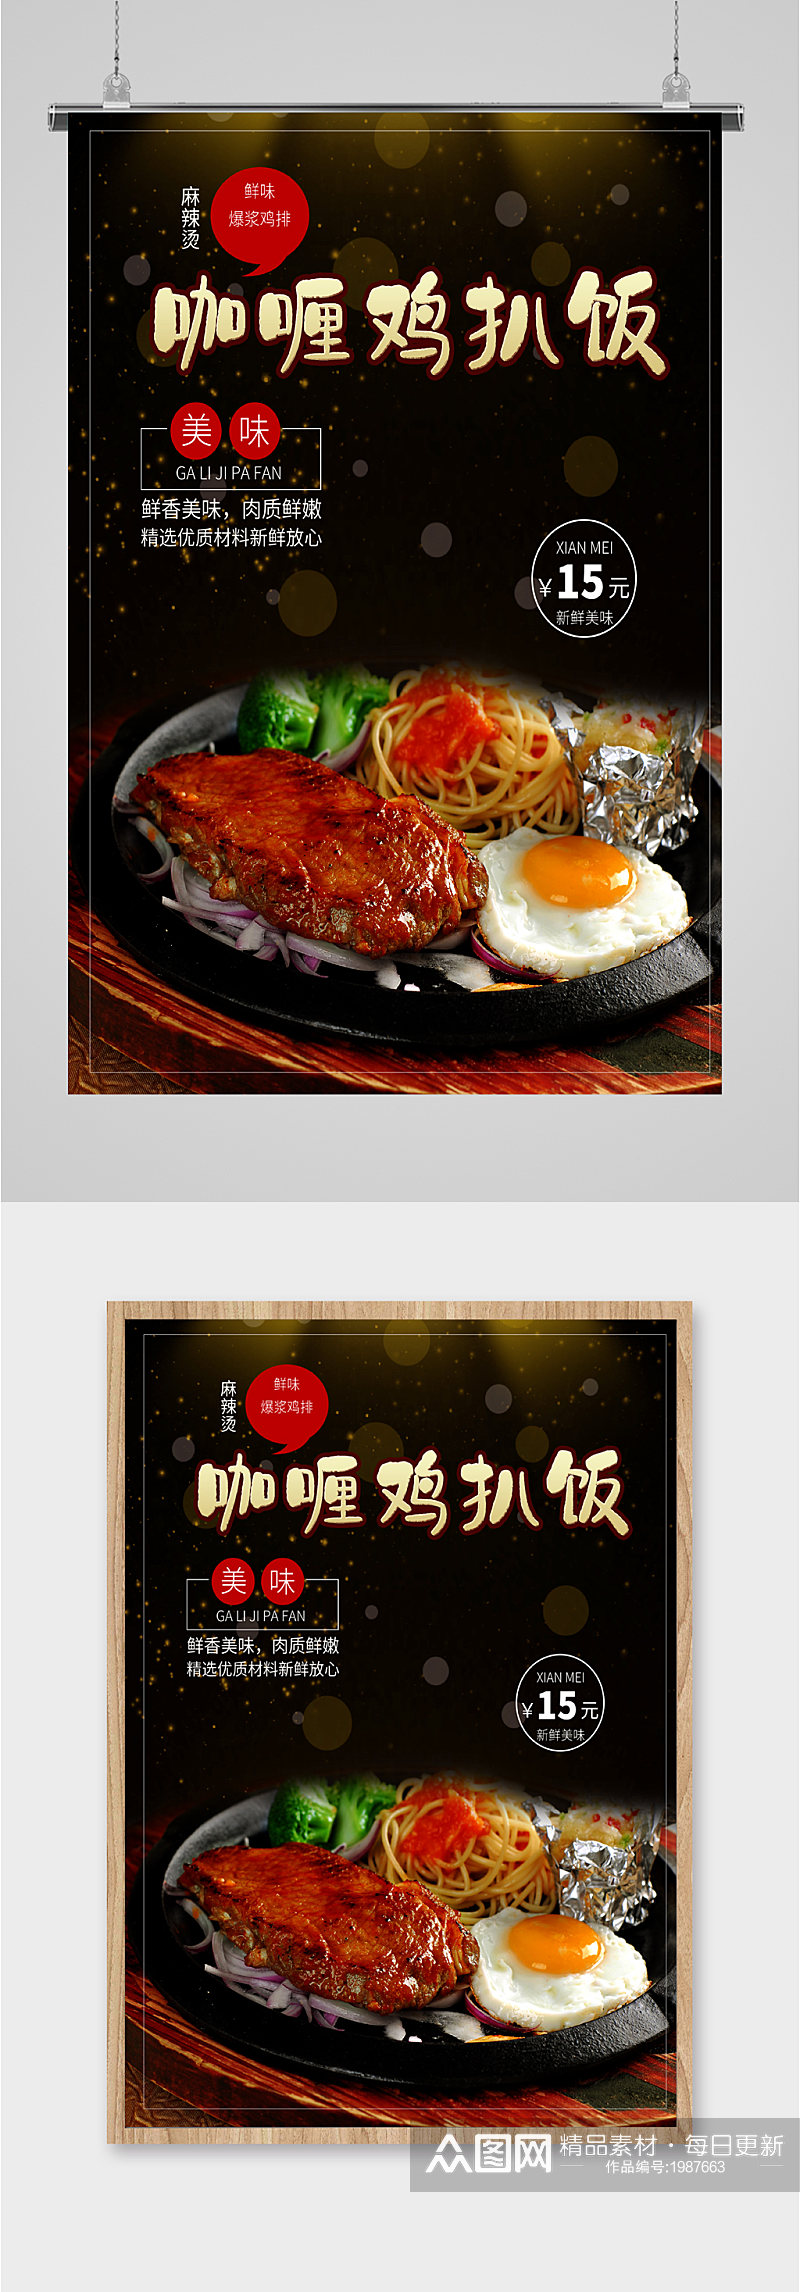 咖喱鸡排饭宣传海报素材